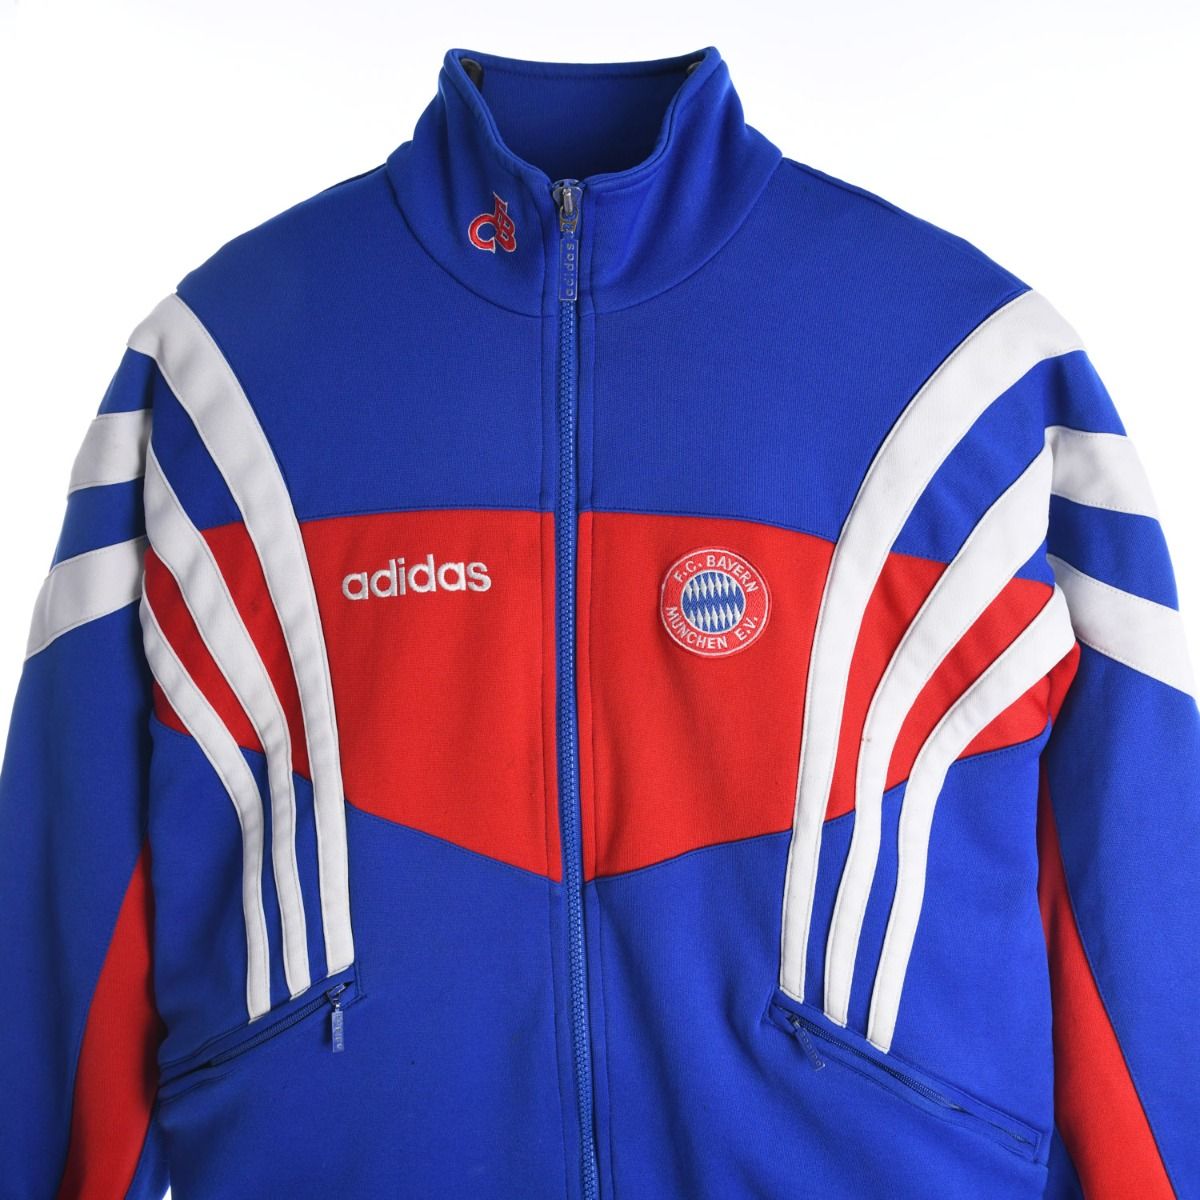 Adidas X Bayern Munich 1990s Track Jacket